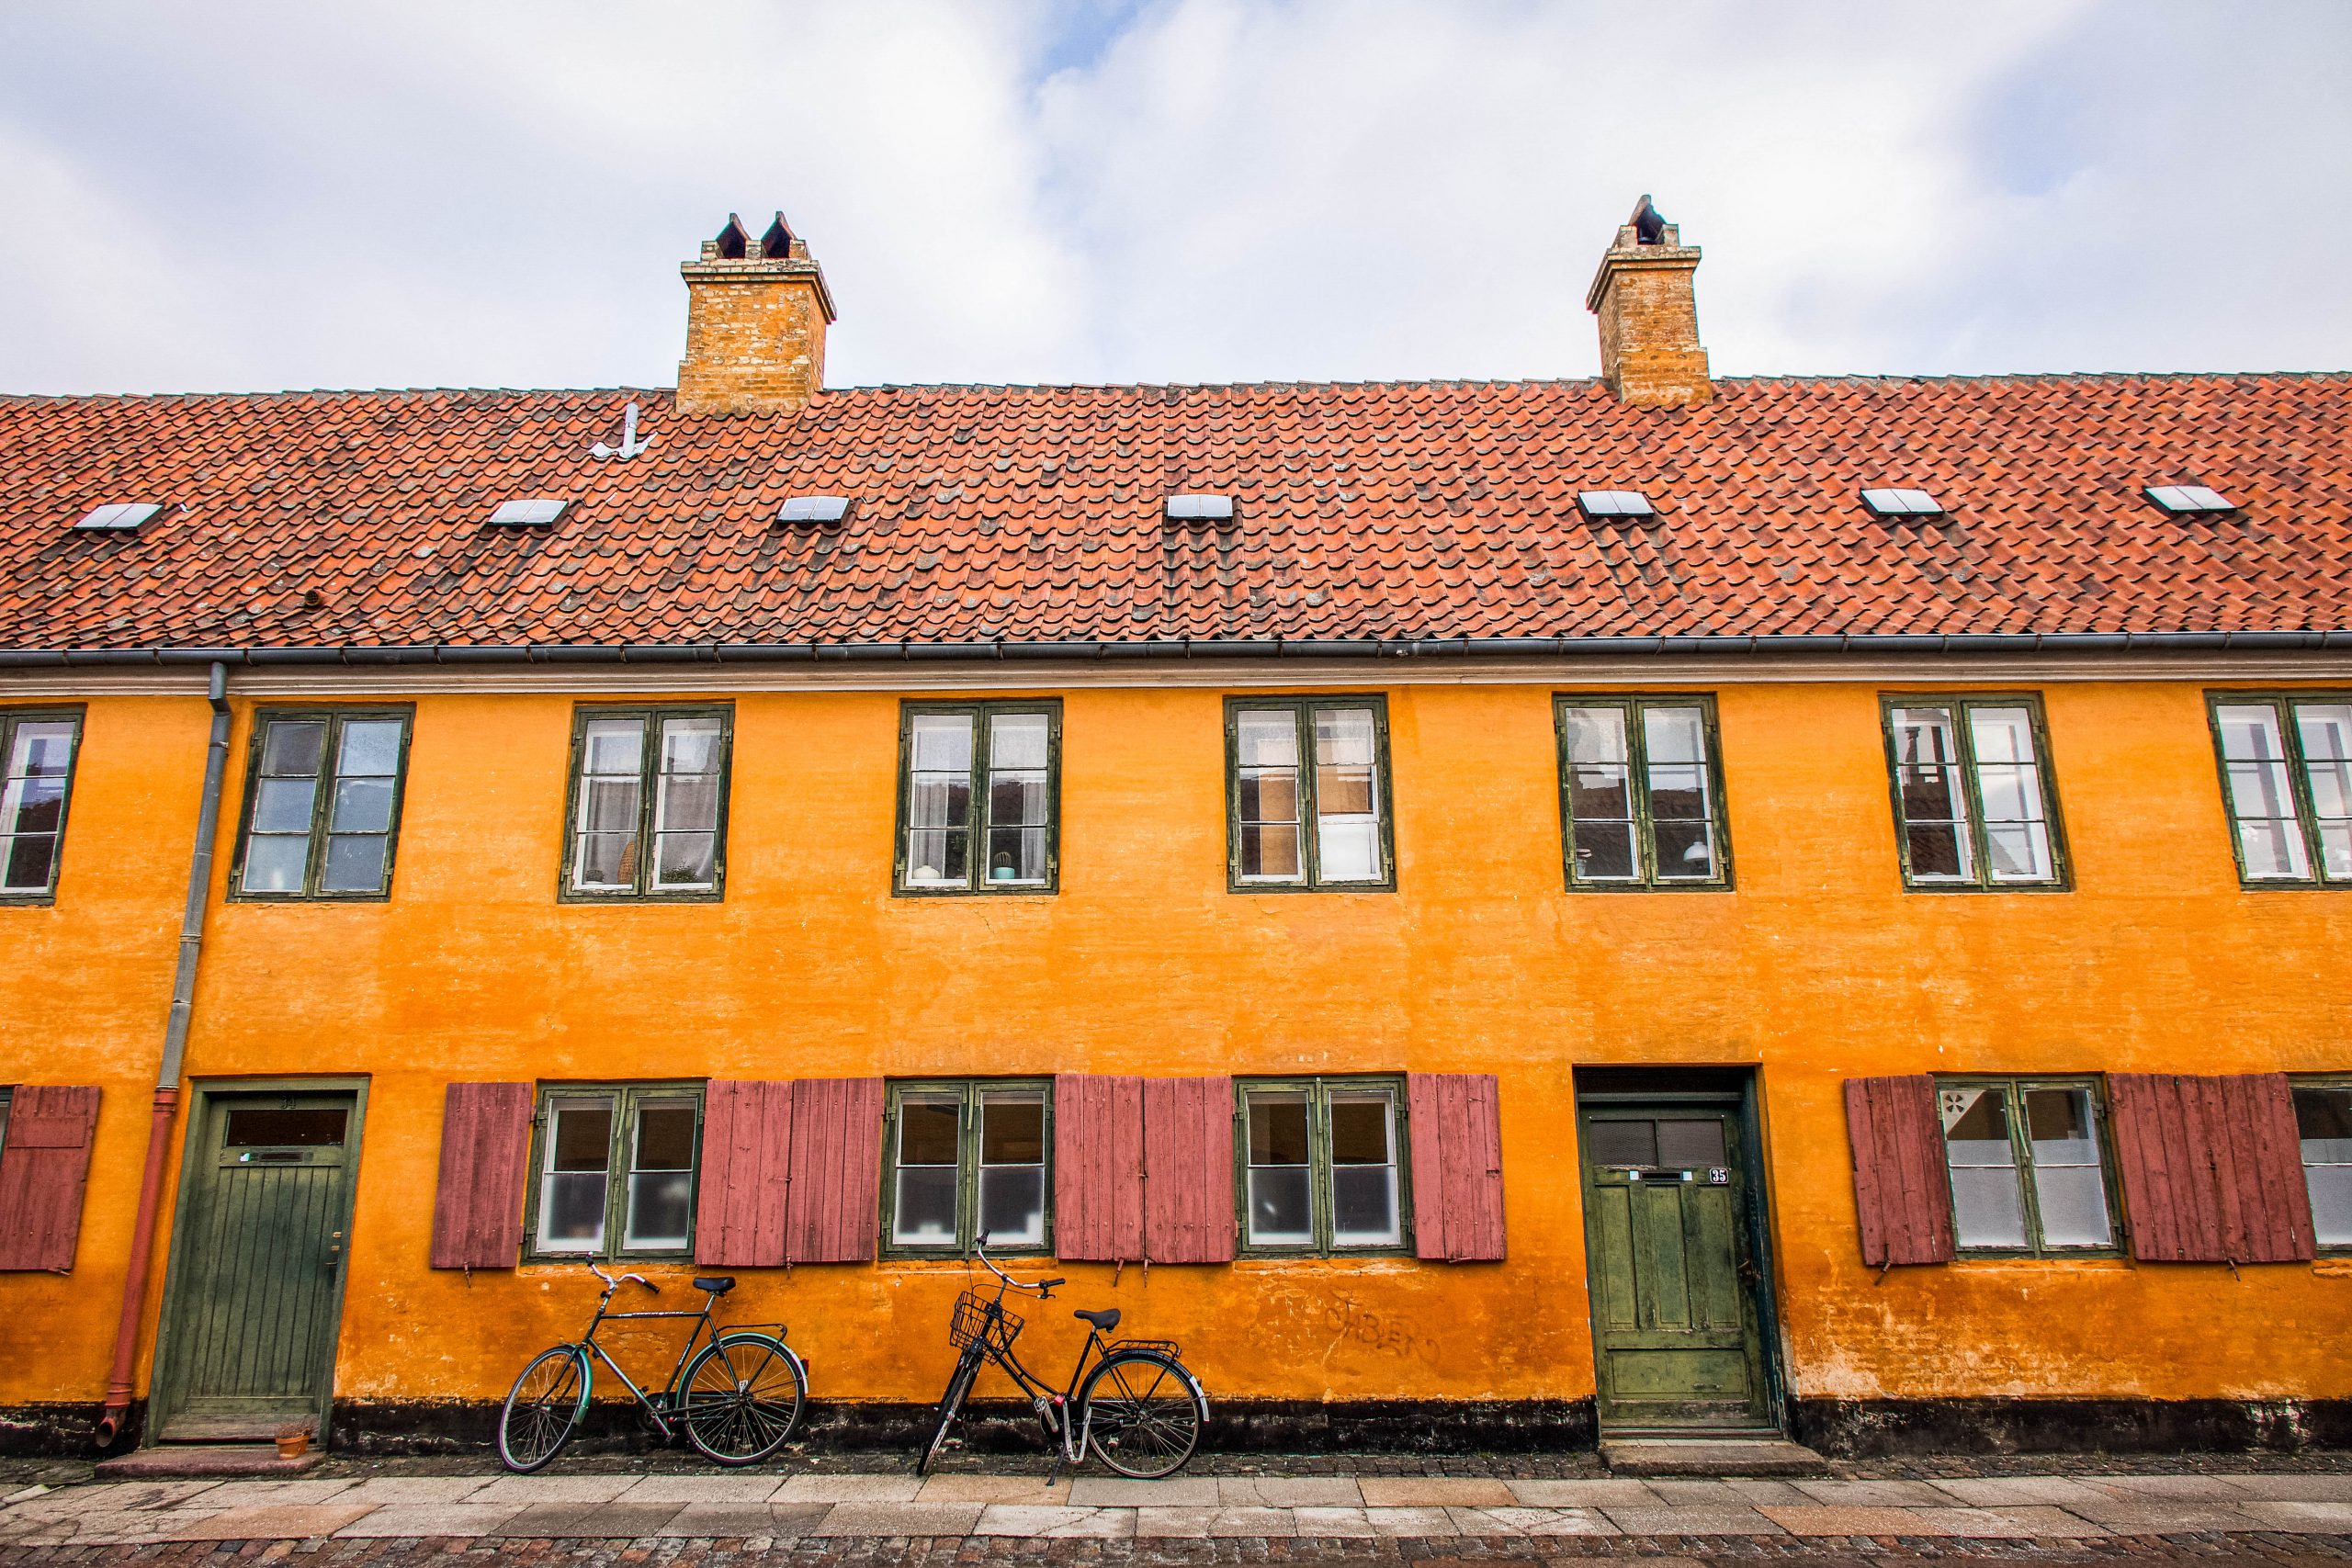 The iconic orange of the Nyboder housing